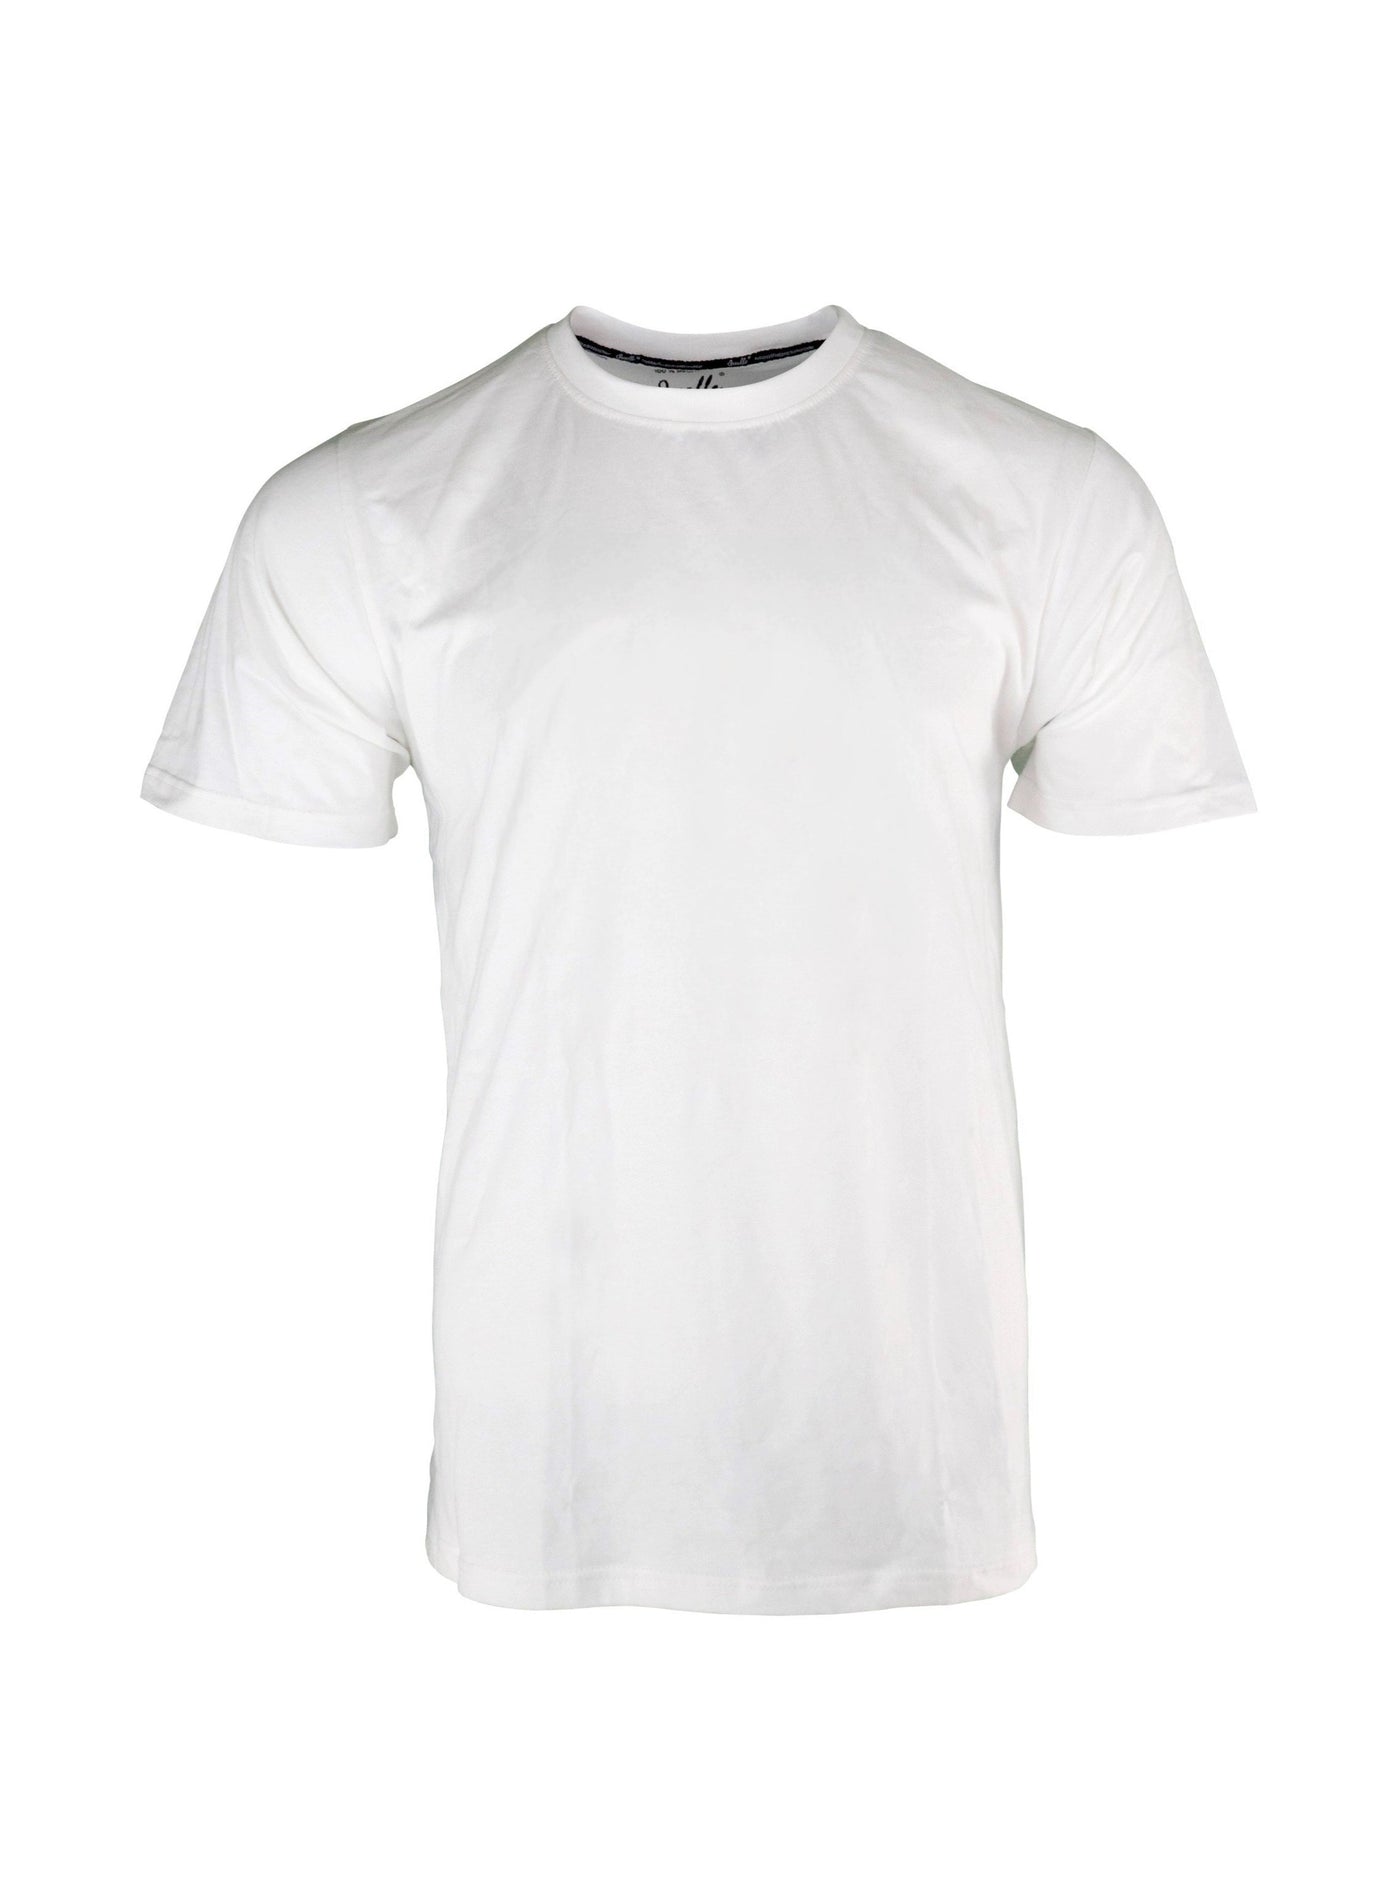 Qualle T-Shirt "Basic Respekt" Baumwolle unisex (Kinder, Frauen und Herren)